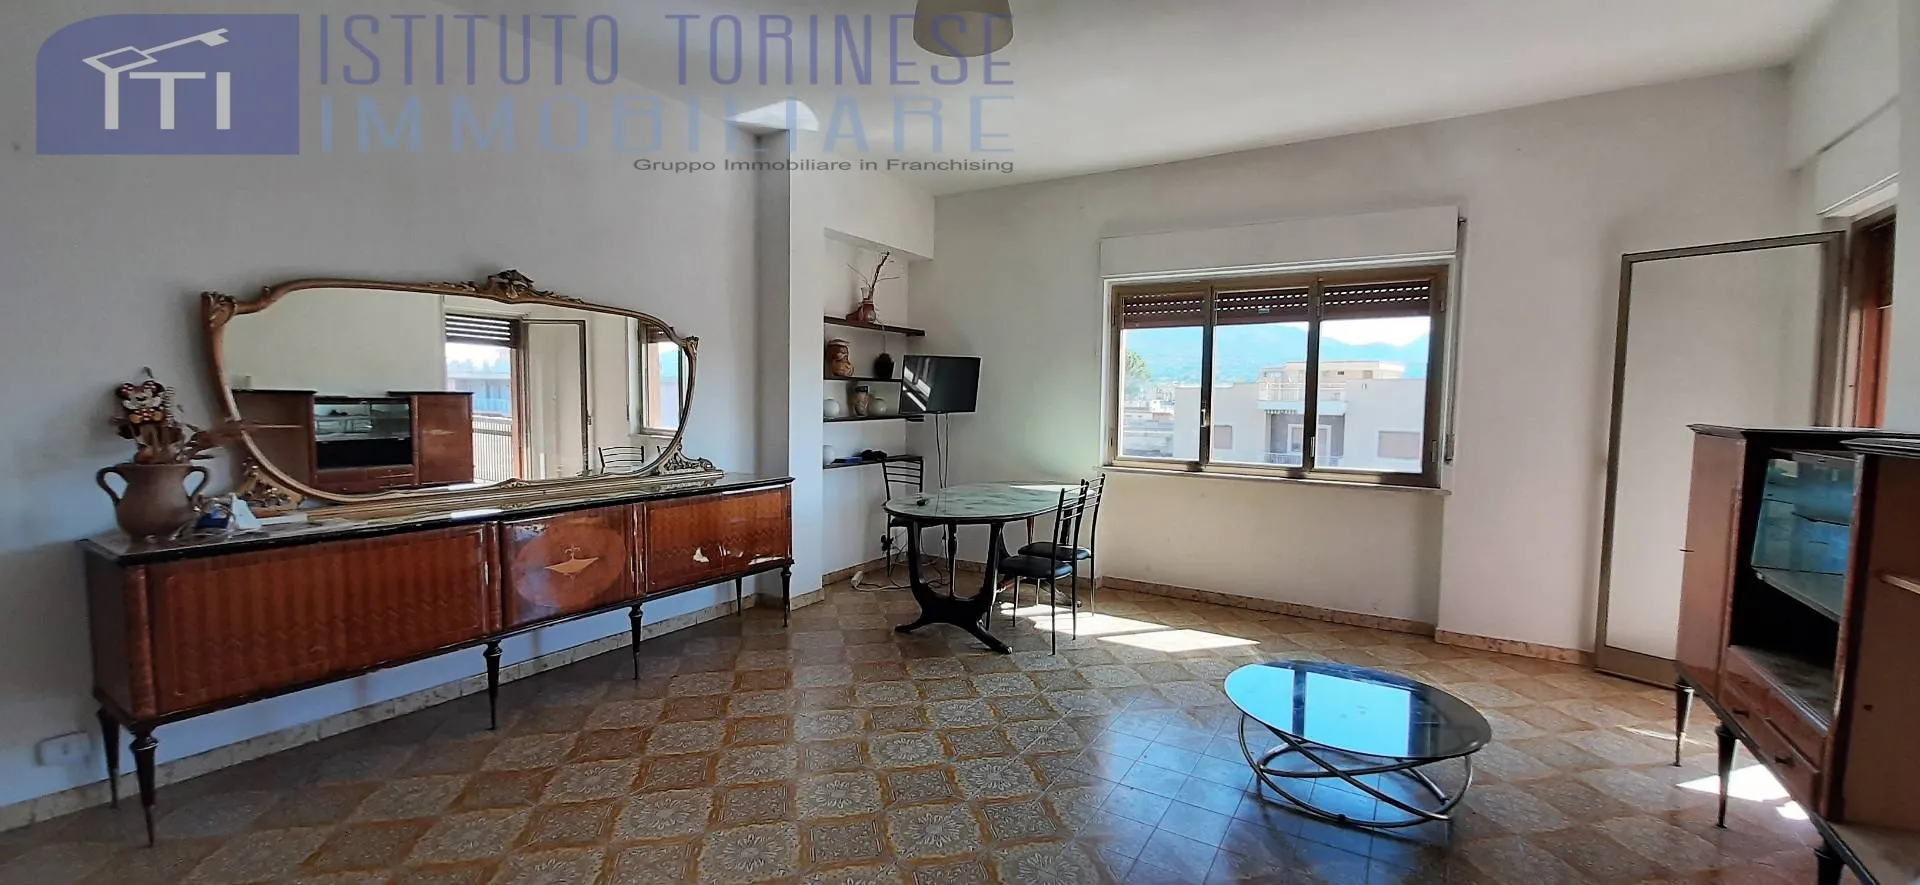 Immagine per Appartamento in vendita a Cassino Viale Europa